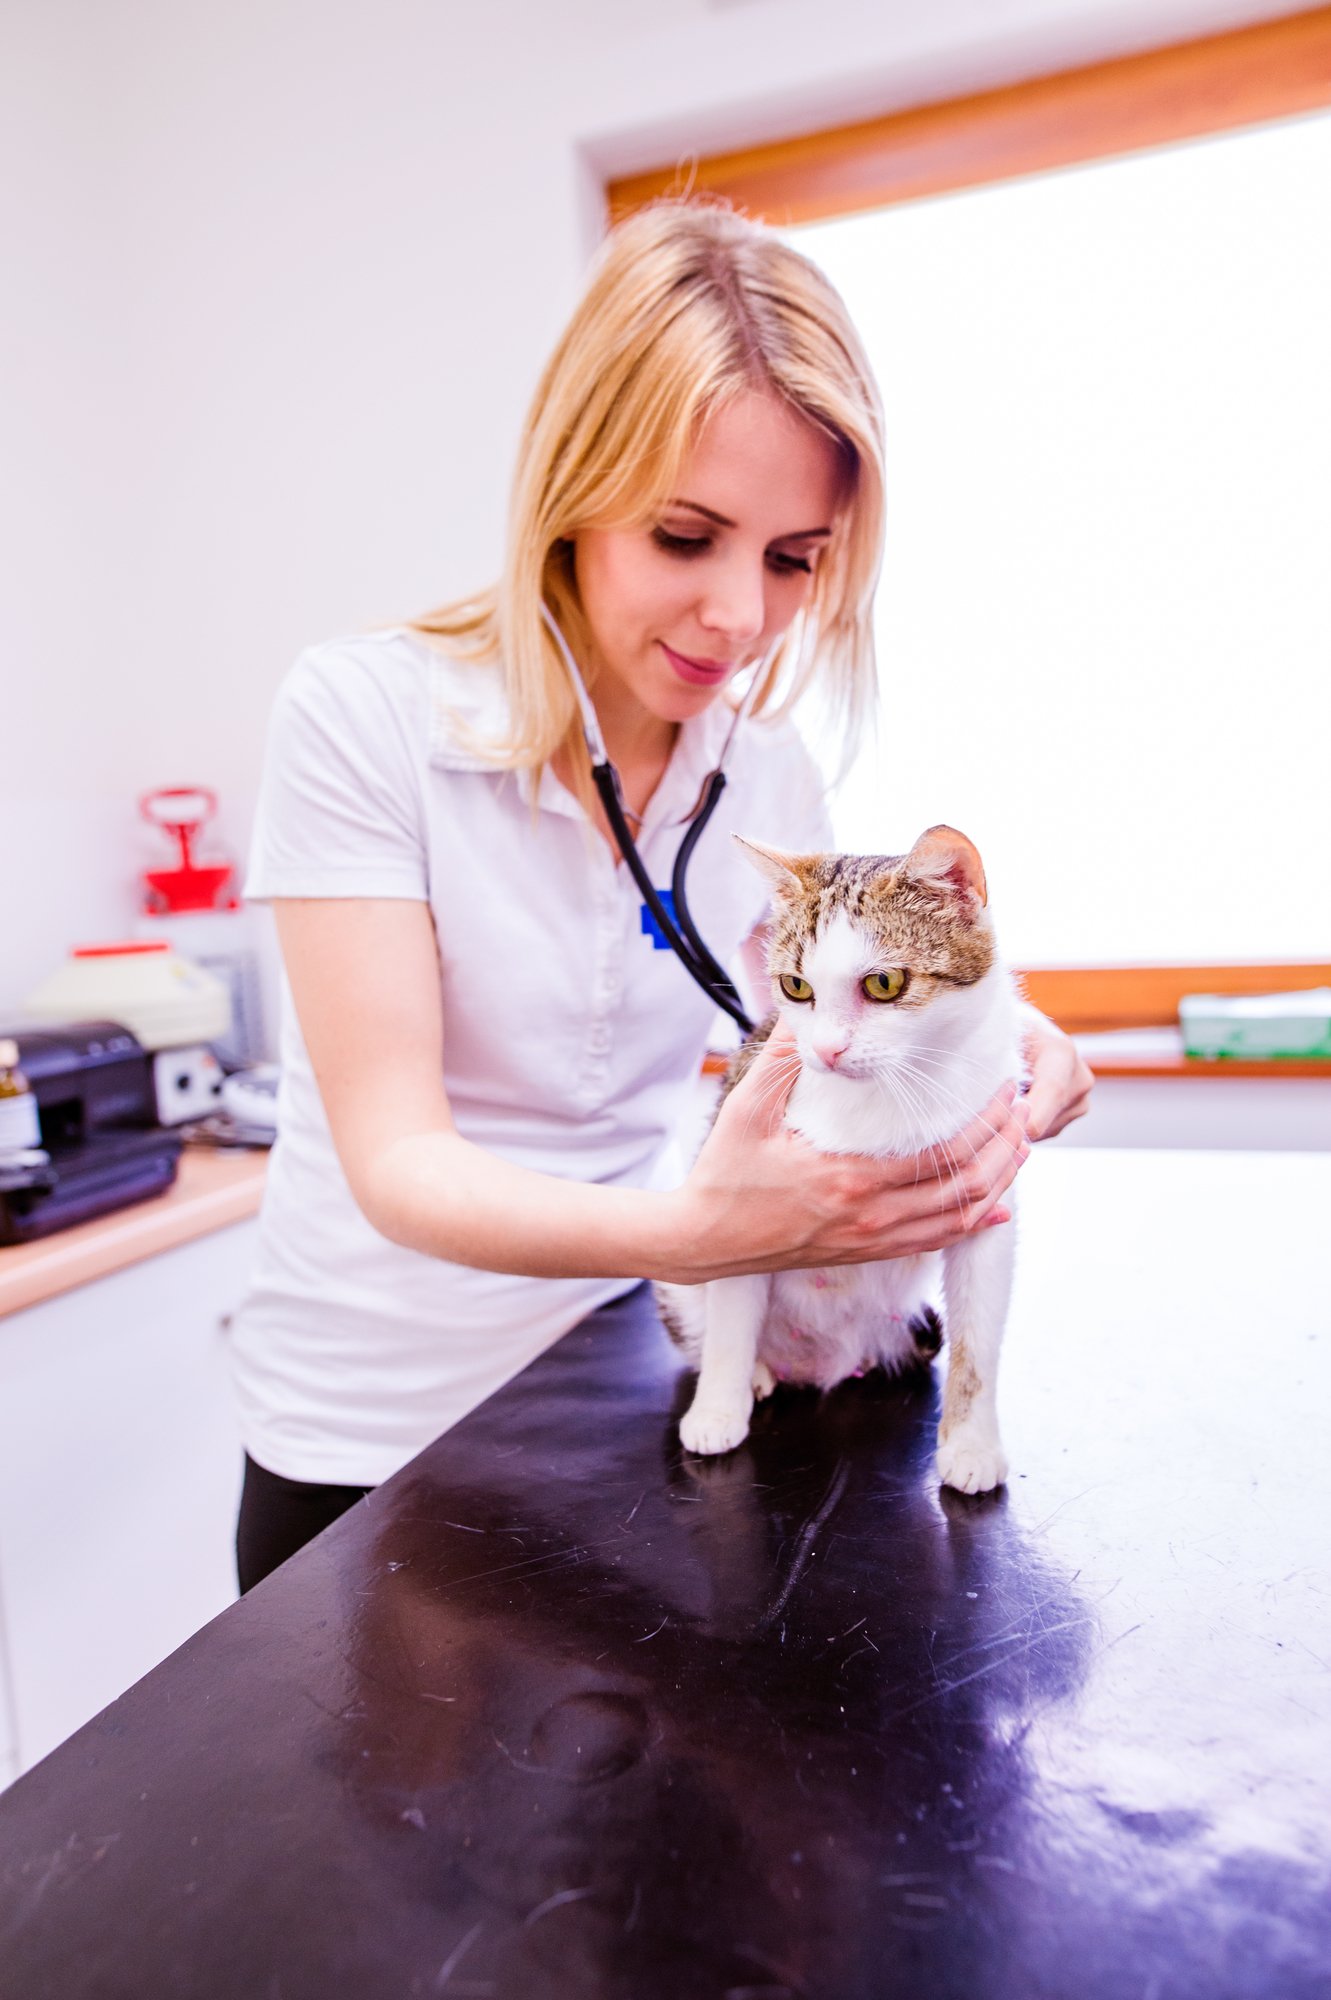 veterinary checkup